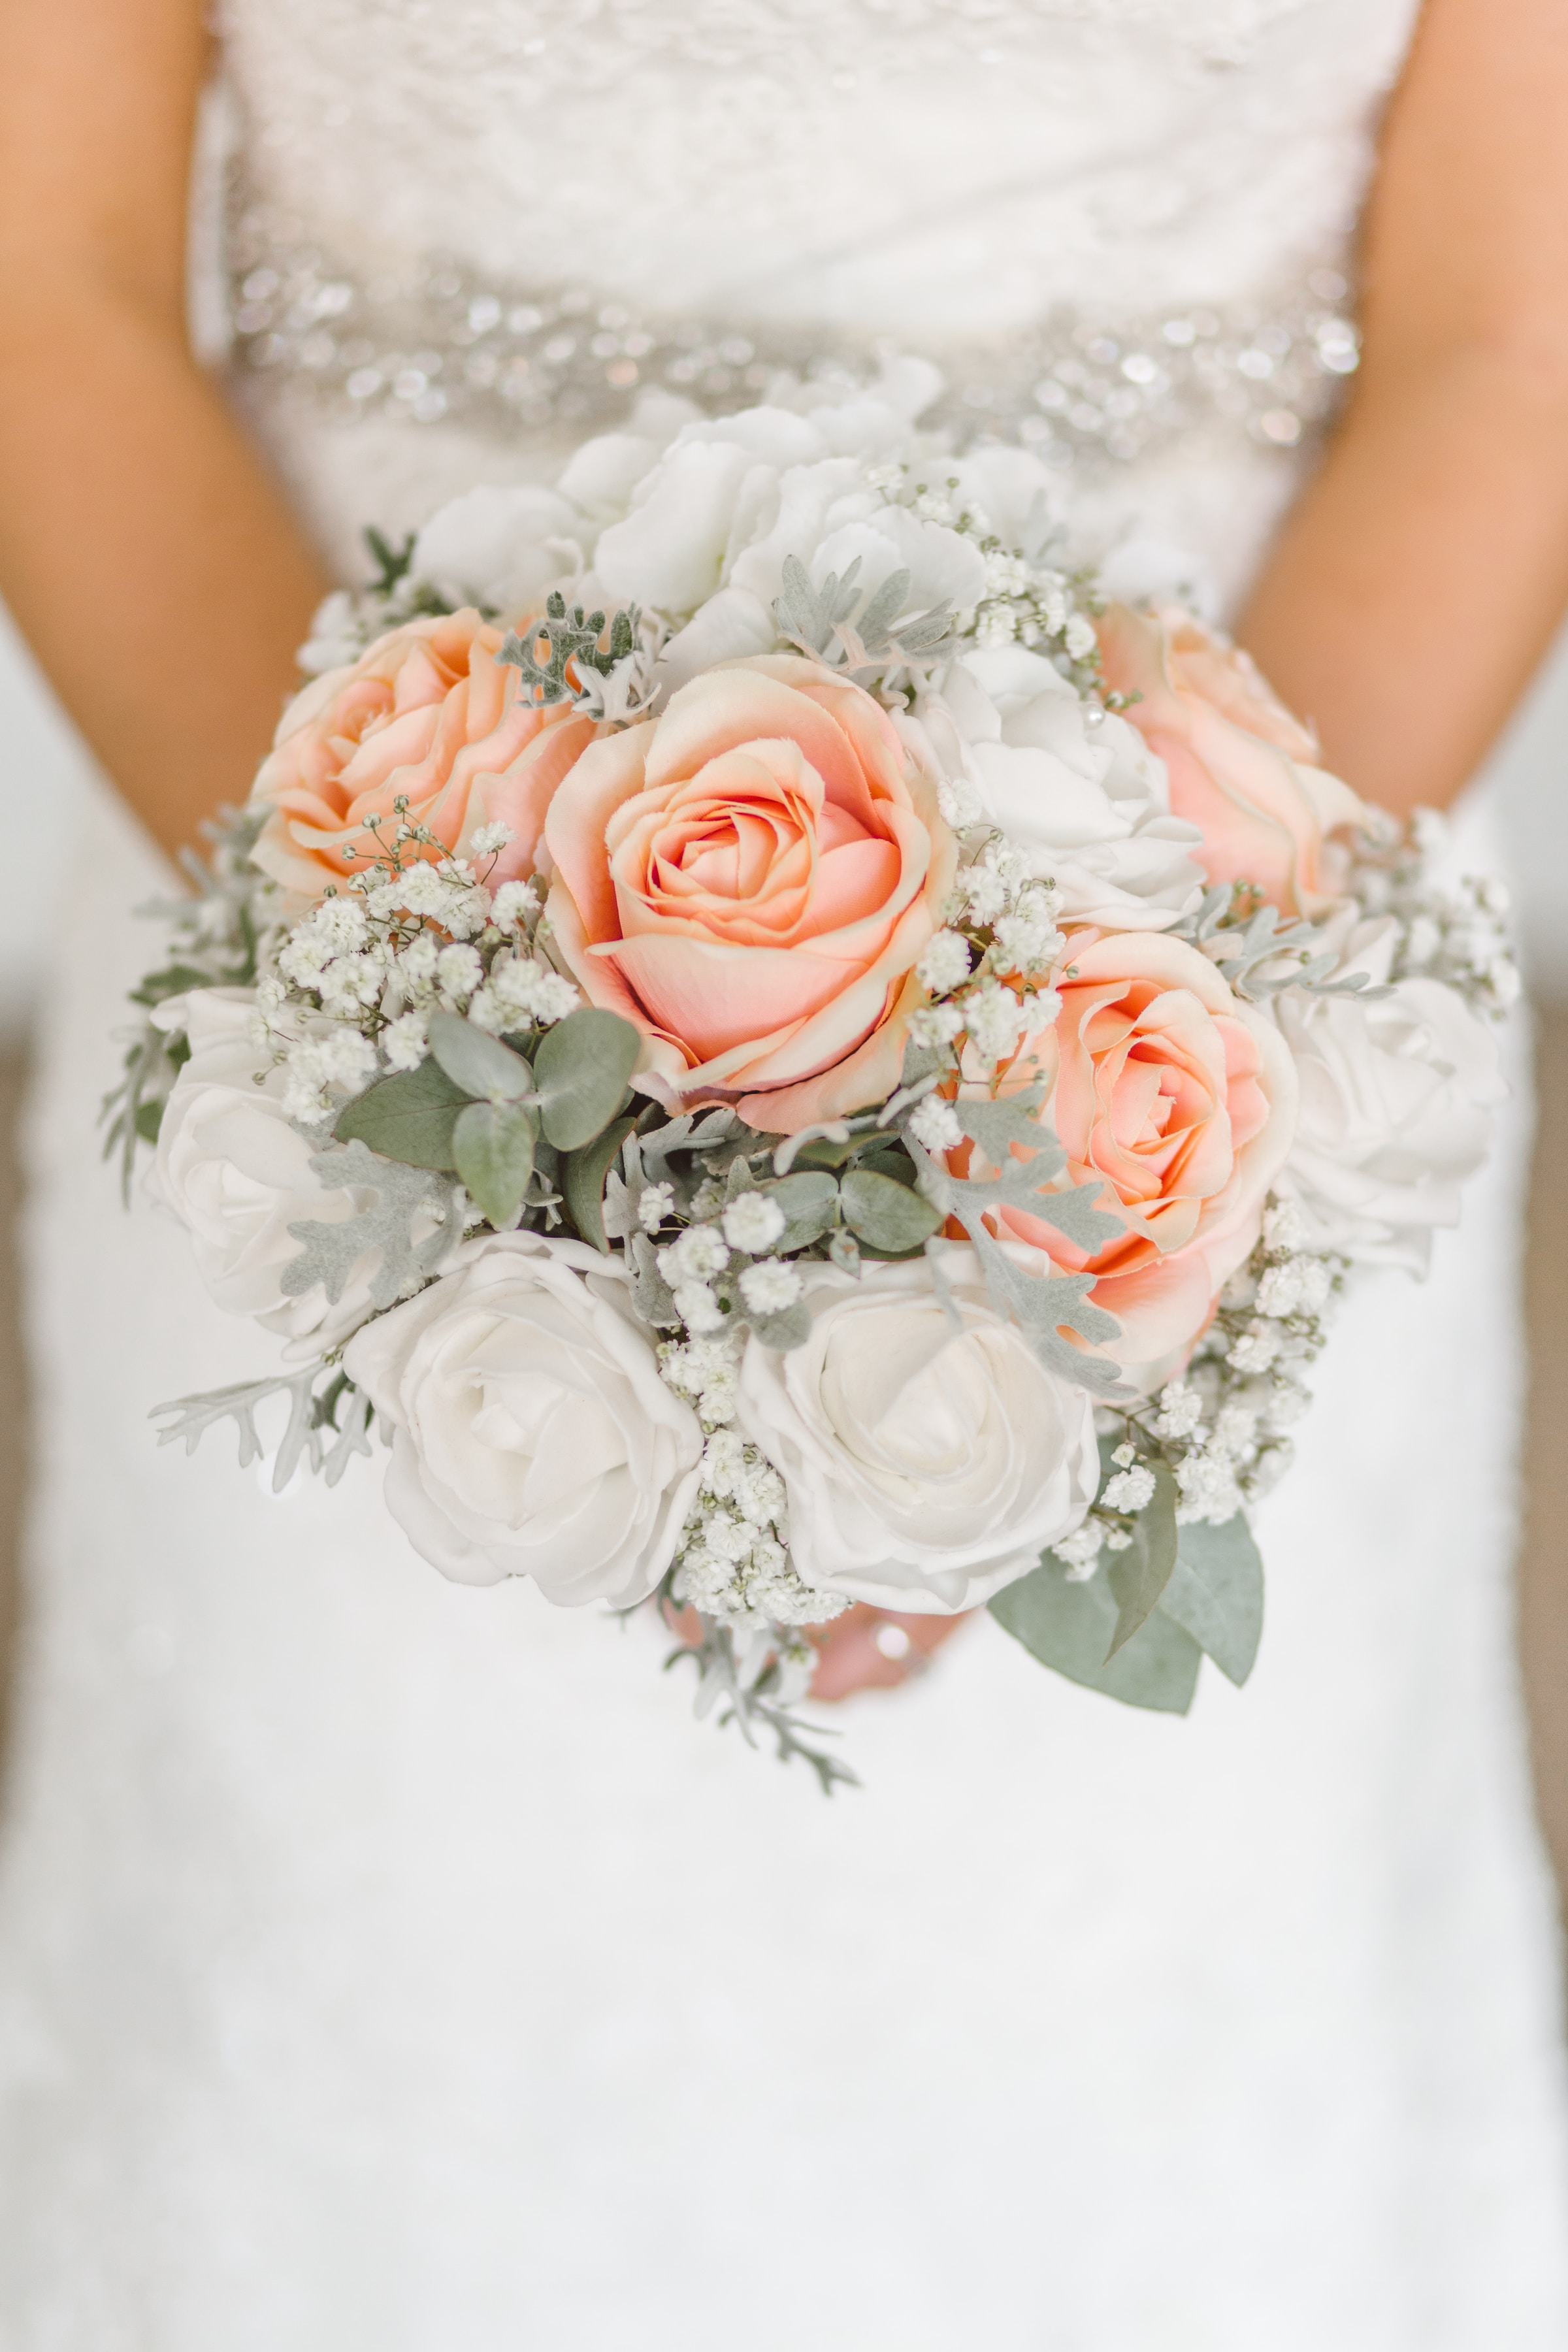 Une mariée en robe de mariée blanche tenant des fleurs | Source : Unsplash